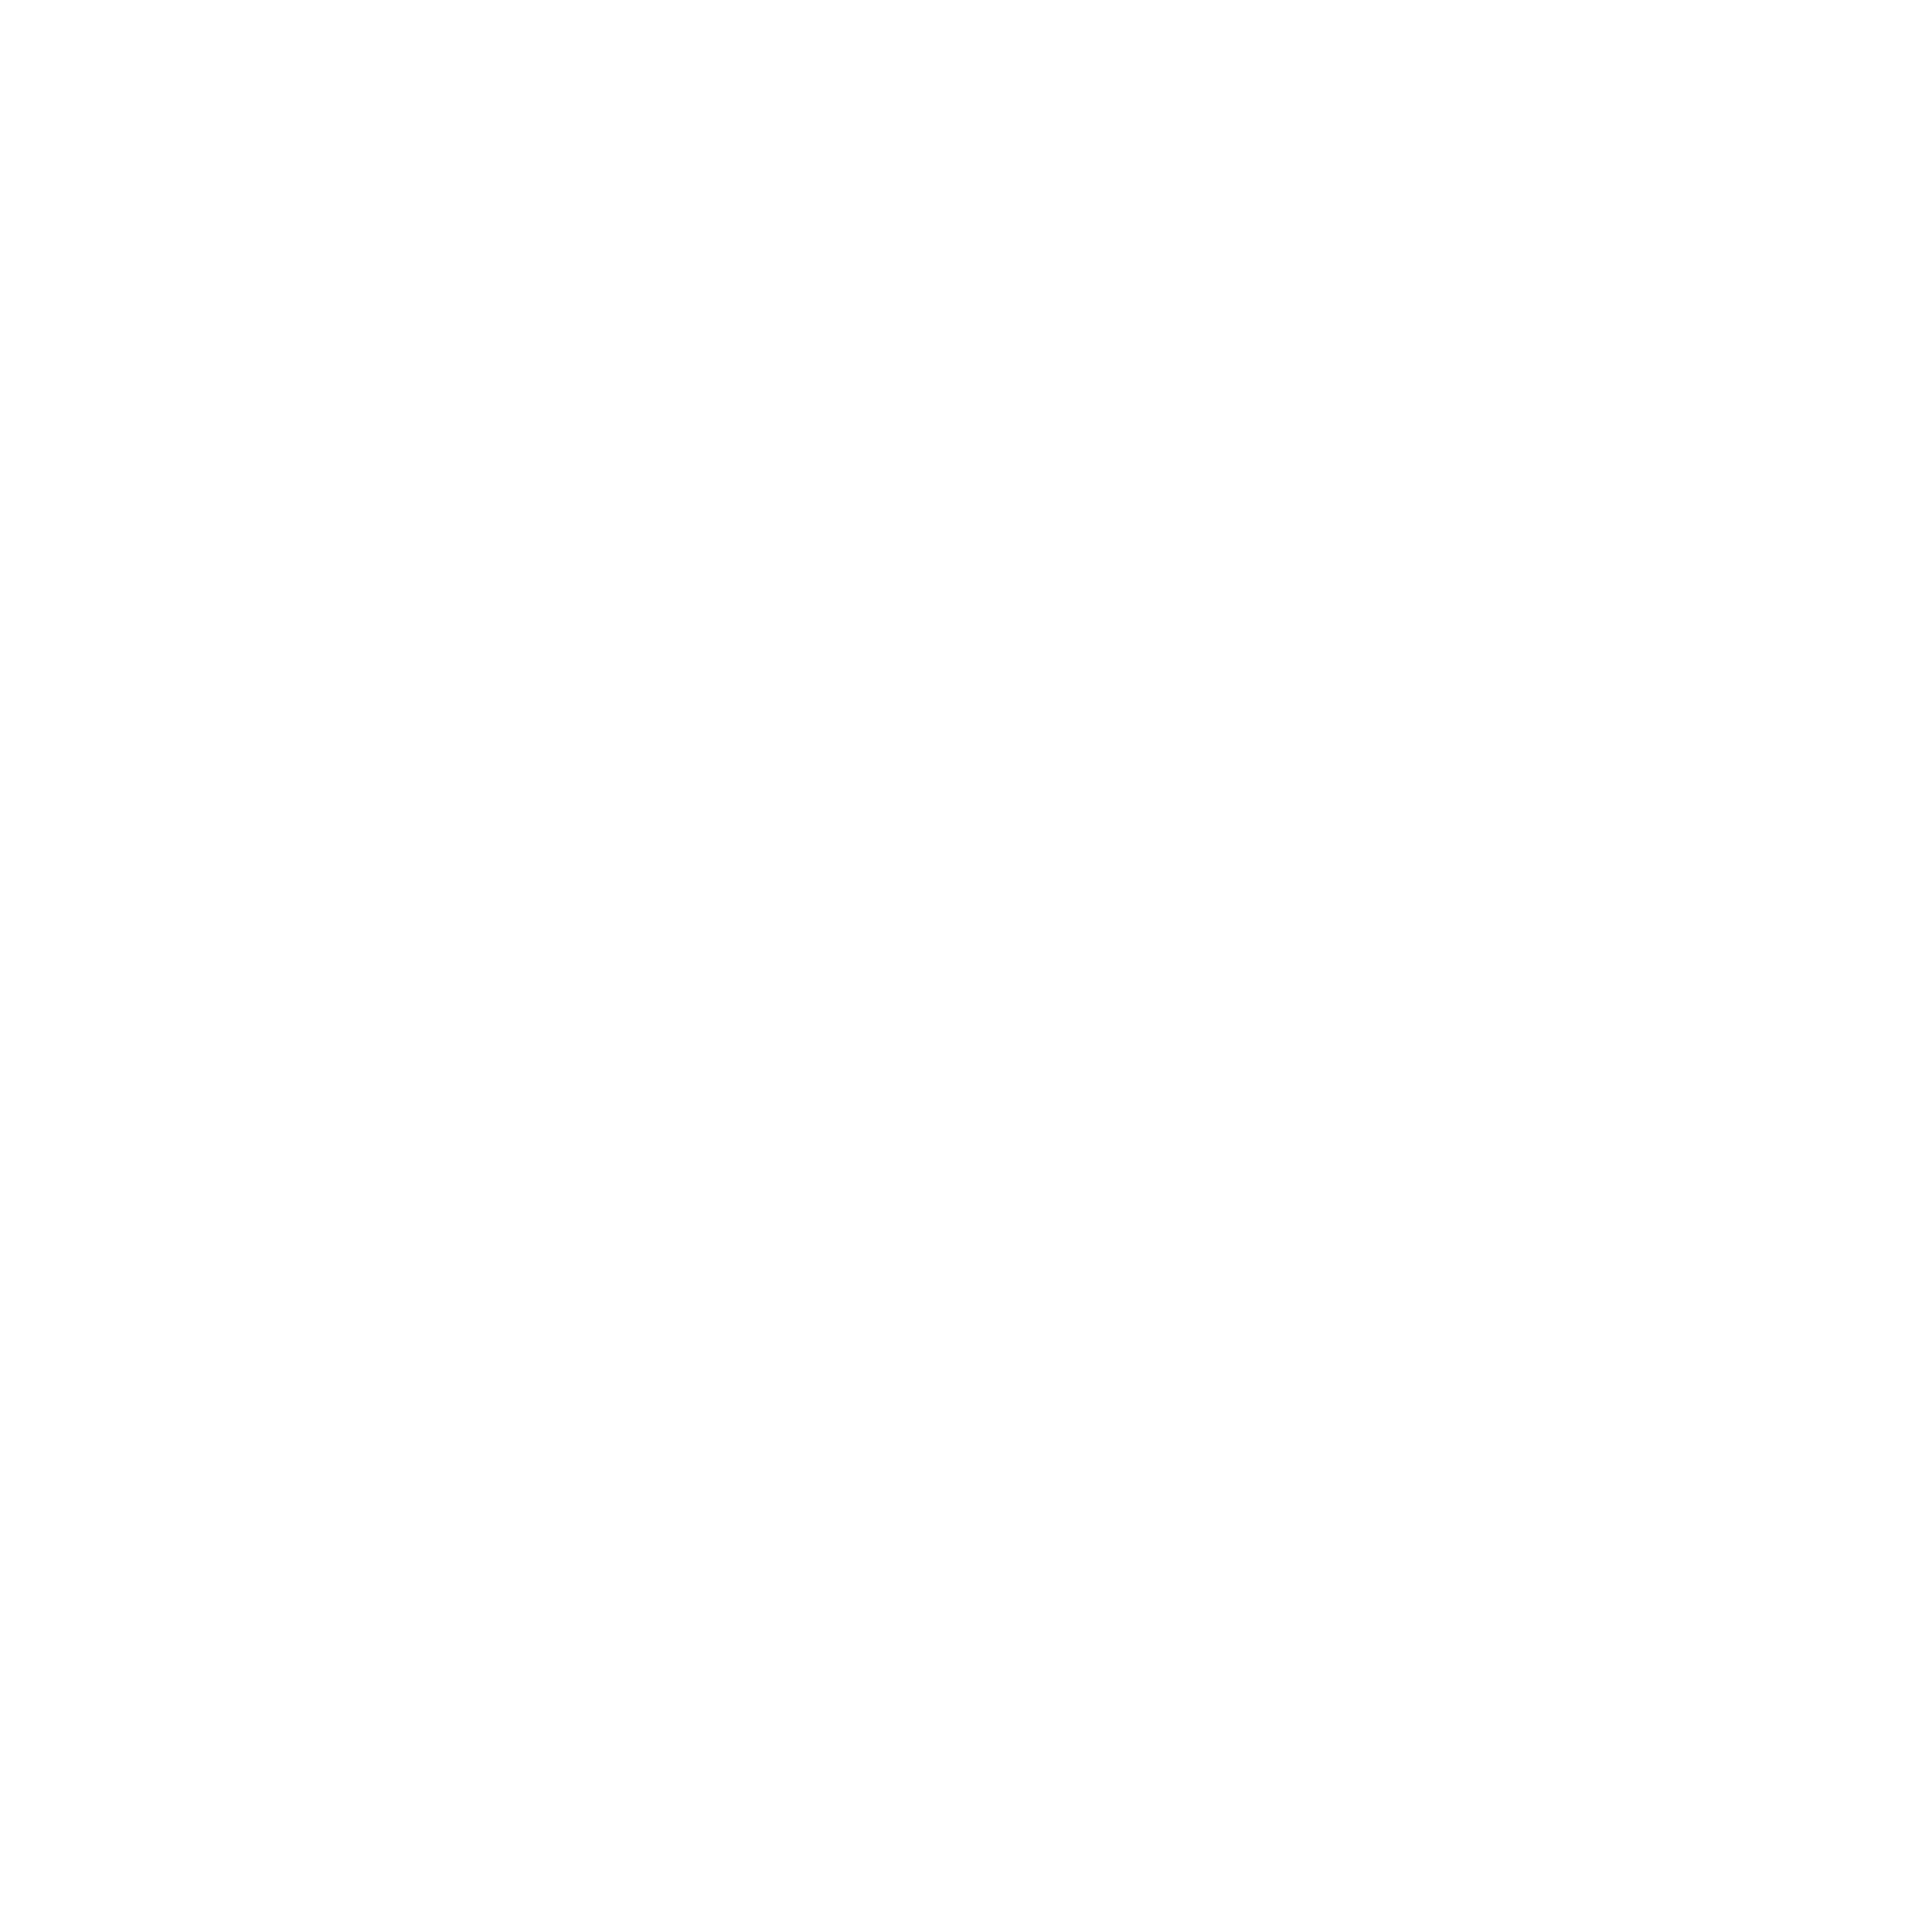 Secret Clue